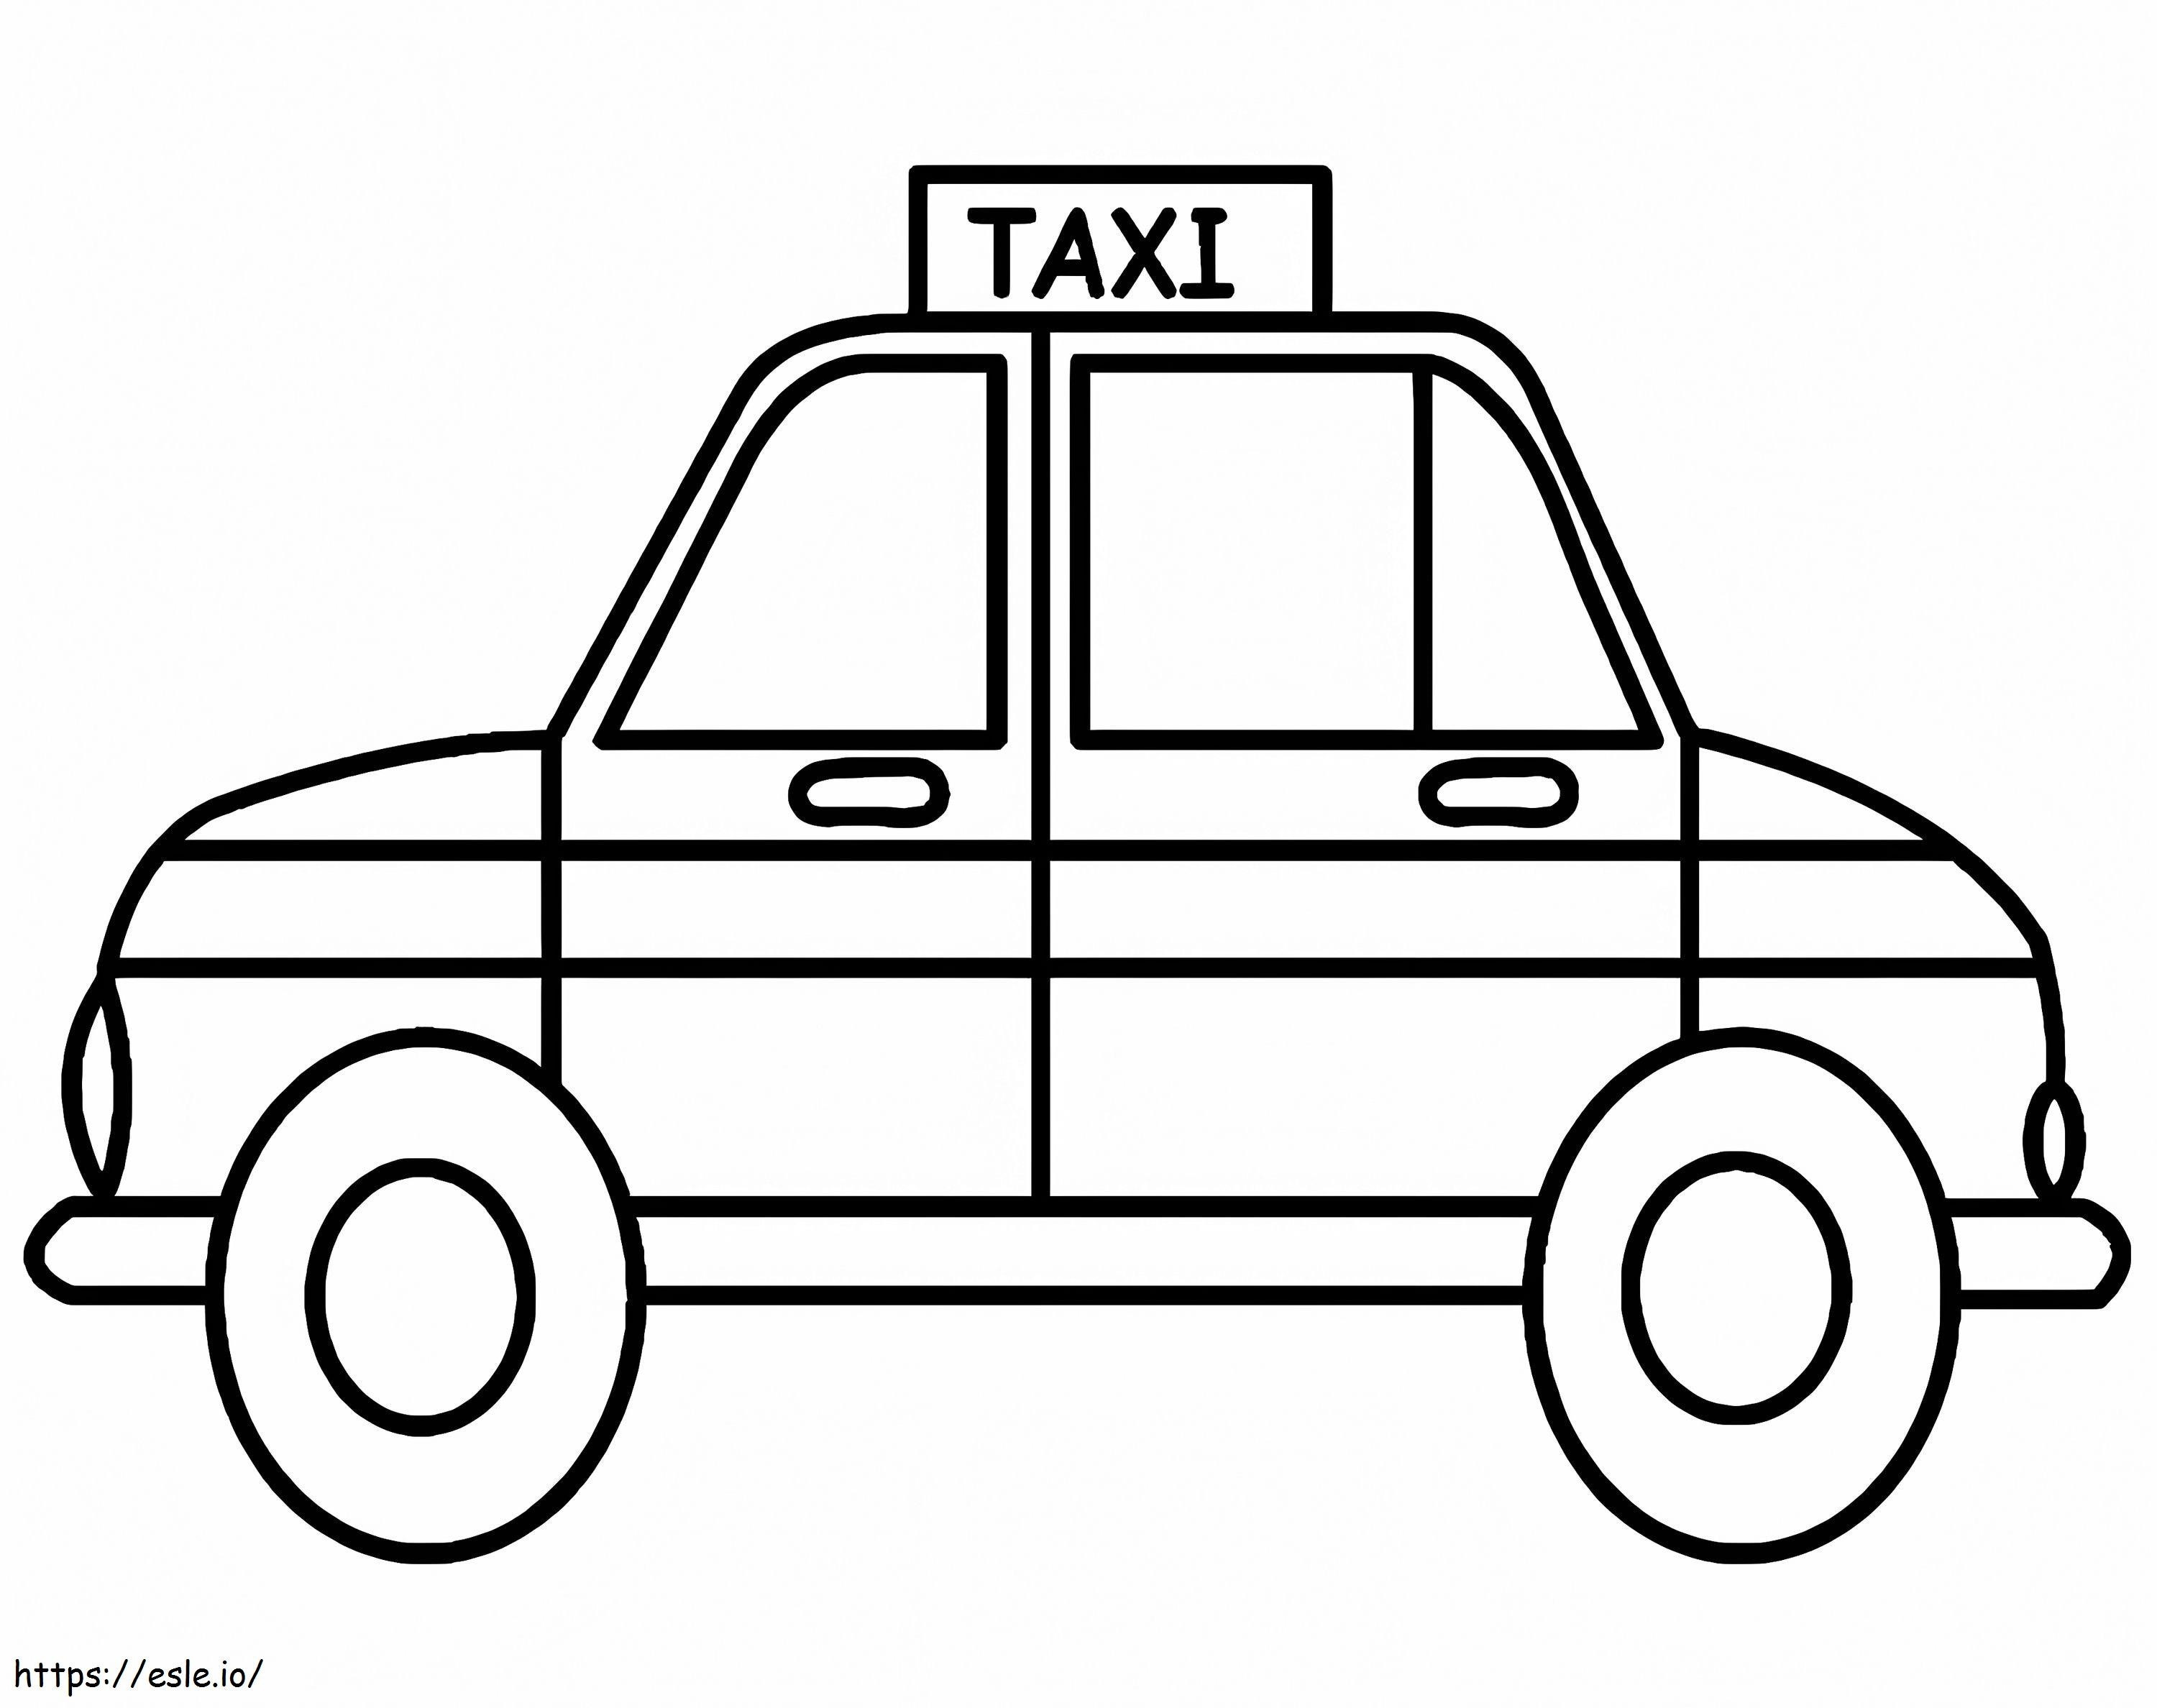 Taxi Eenvoudig 2 kleurplaat kleurplaat